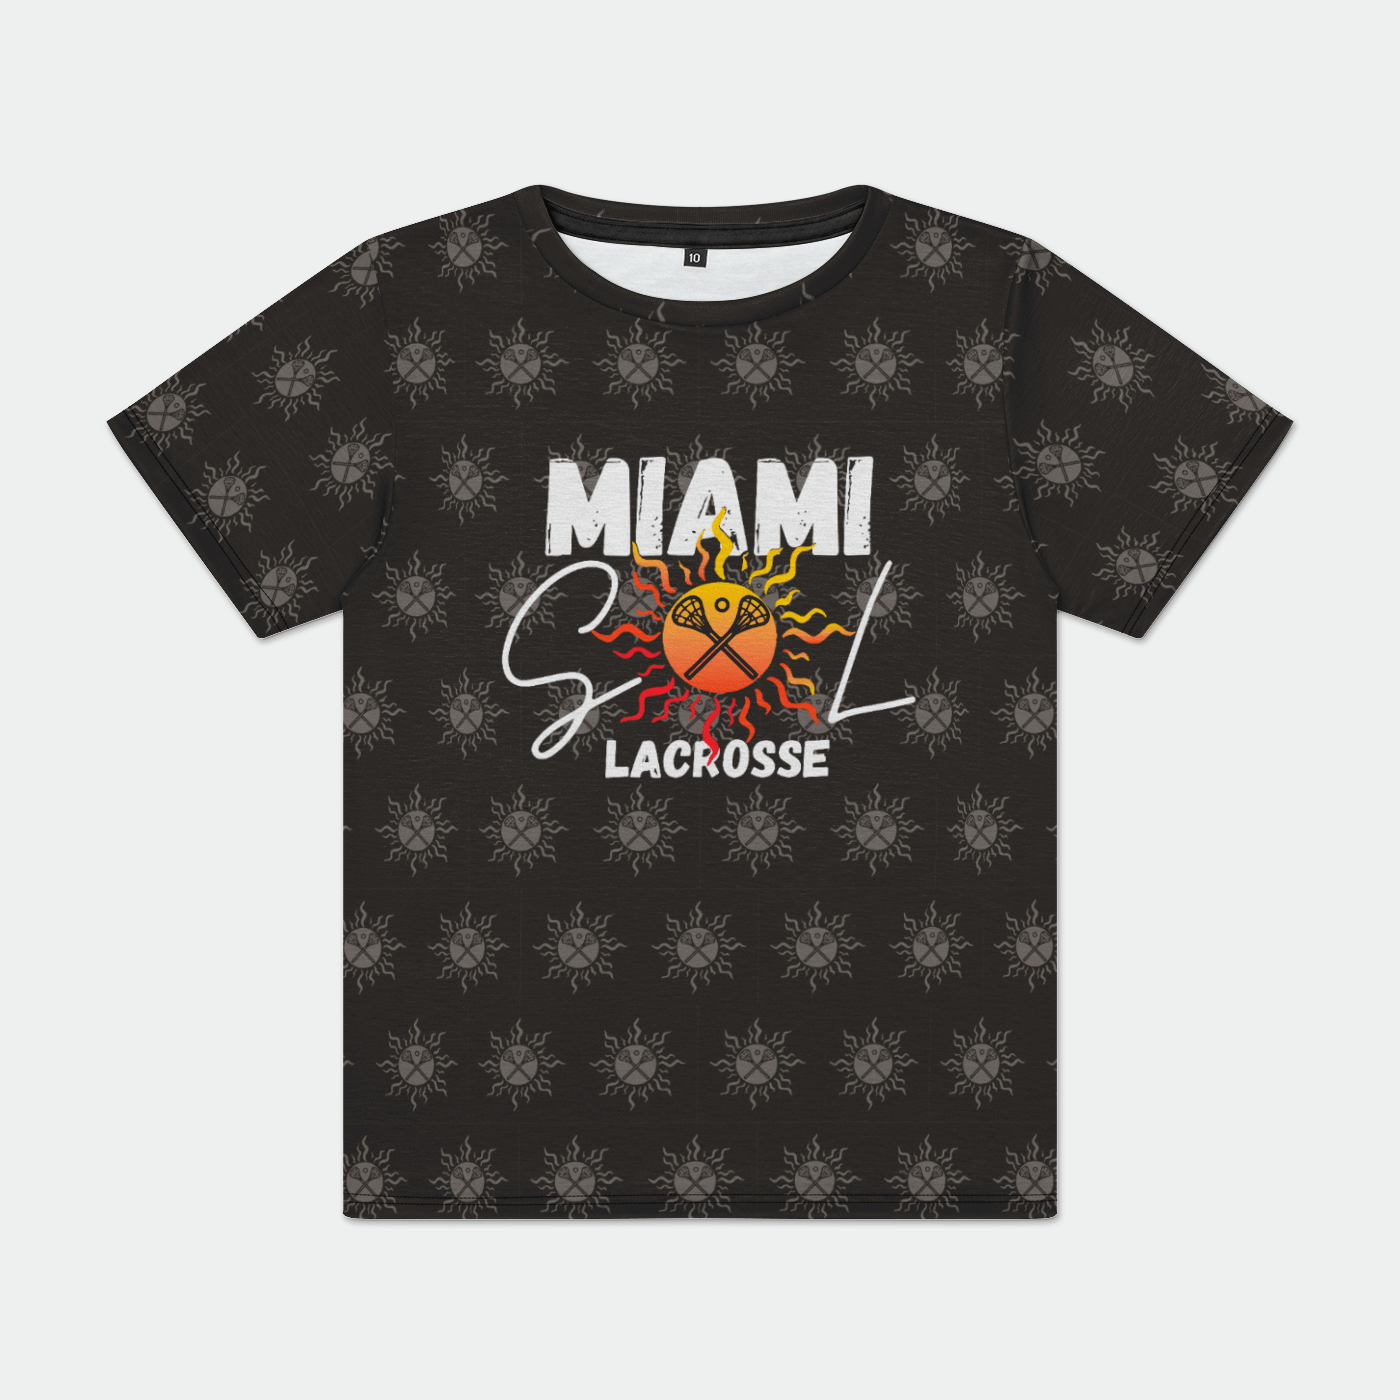 Miami SOL Lacrosse Athletic T-Shirt Signature Lacrosse